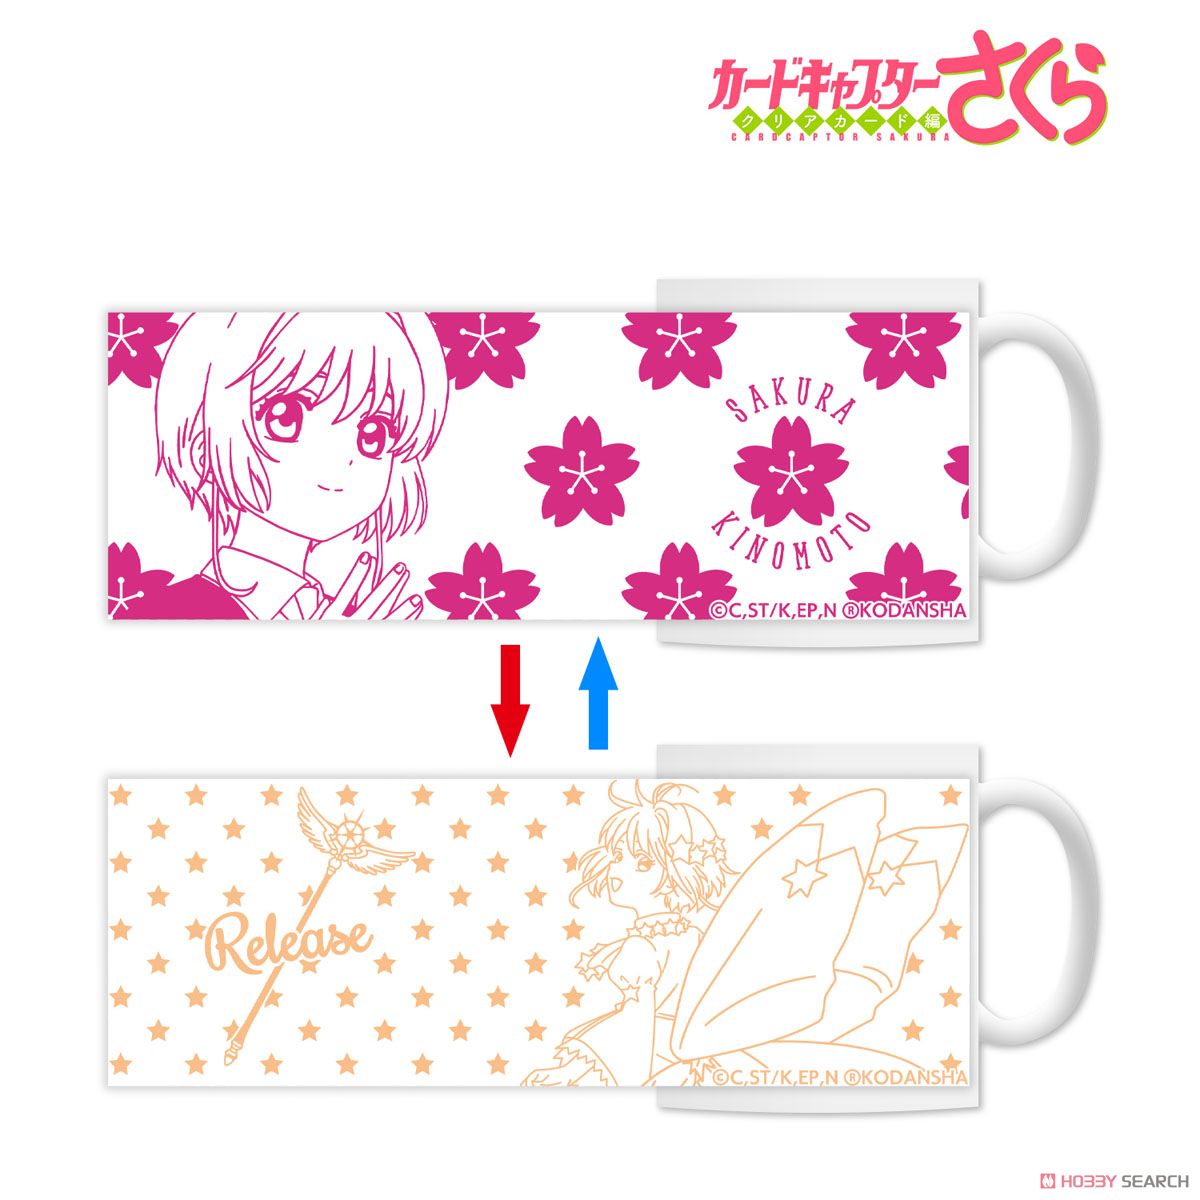 Cardcaptor Sakura: Clear Card Sakura Changing Mug Cup (Anime Toy) Item picture1